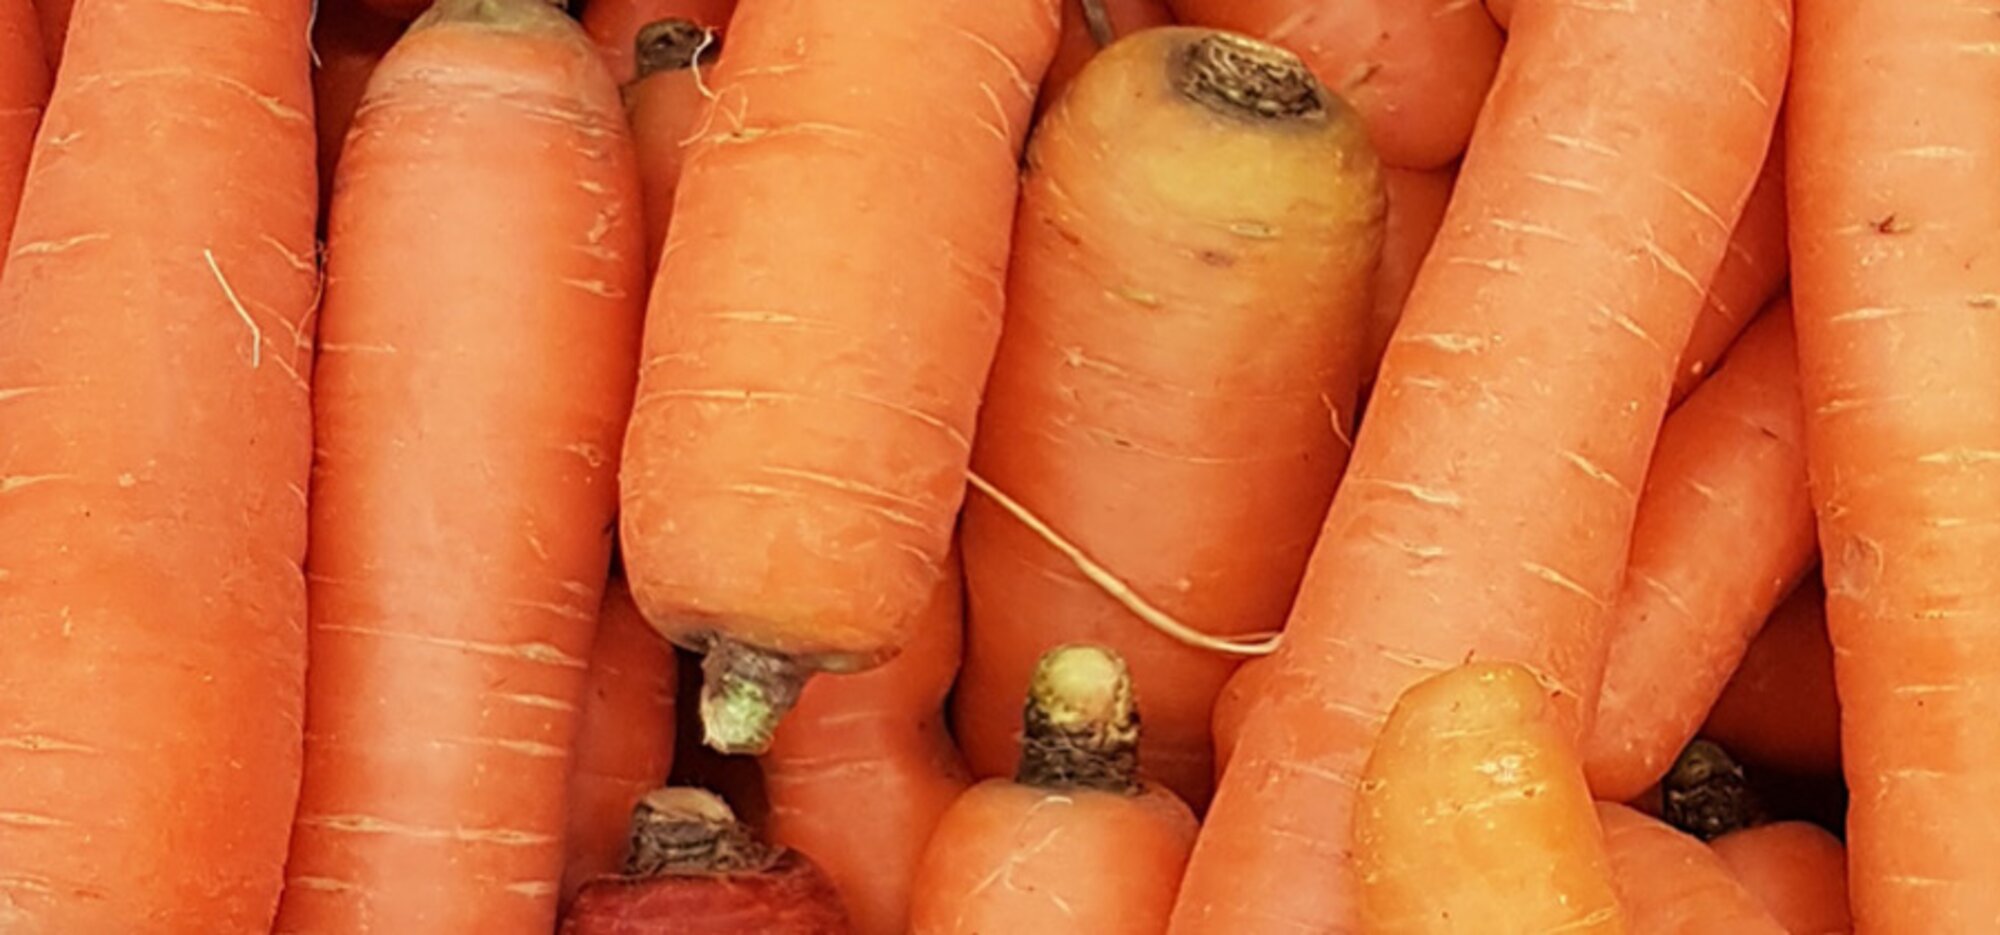 Gemüse-Lexikon: Karotten